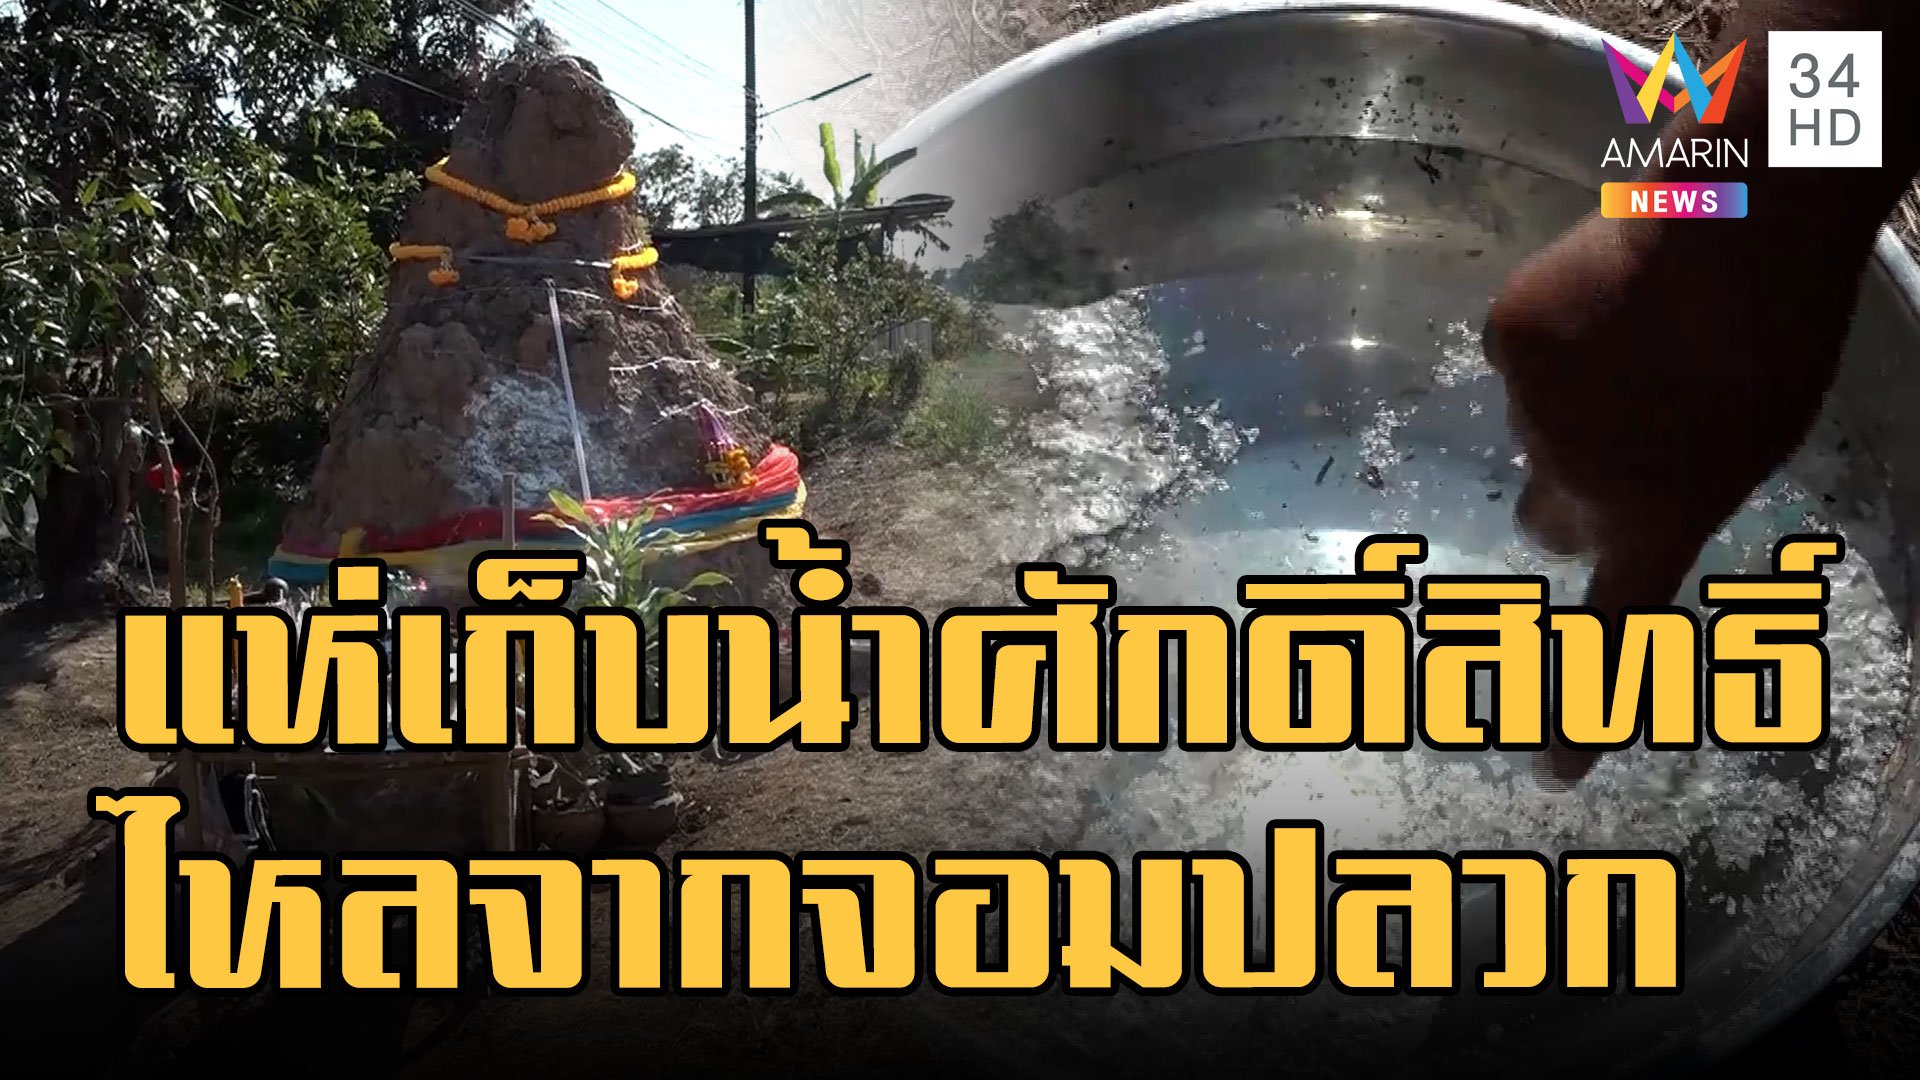 จอมปลวกมีน้ำไหล ชาวบ้านใช้ทาแก้ปวด เชื่อเป็นน้ำศักดิ์สิทธิ์ | ข่าวอรุณอมรินทร์ | 23 ม.ค. 66 | AMARIN TVHD34